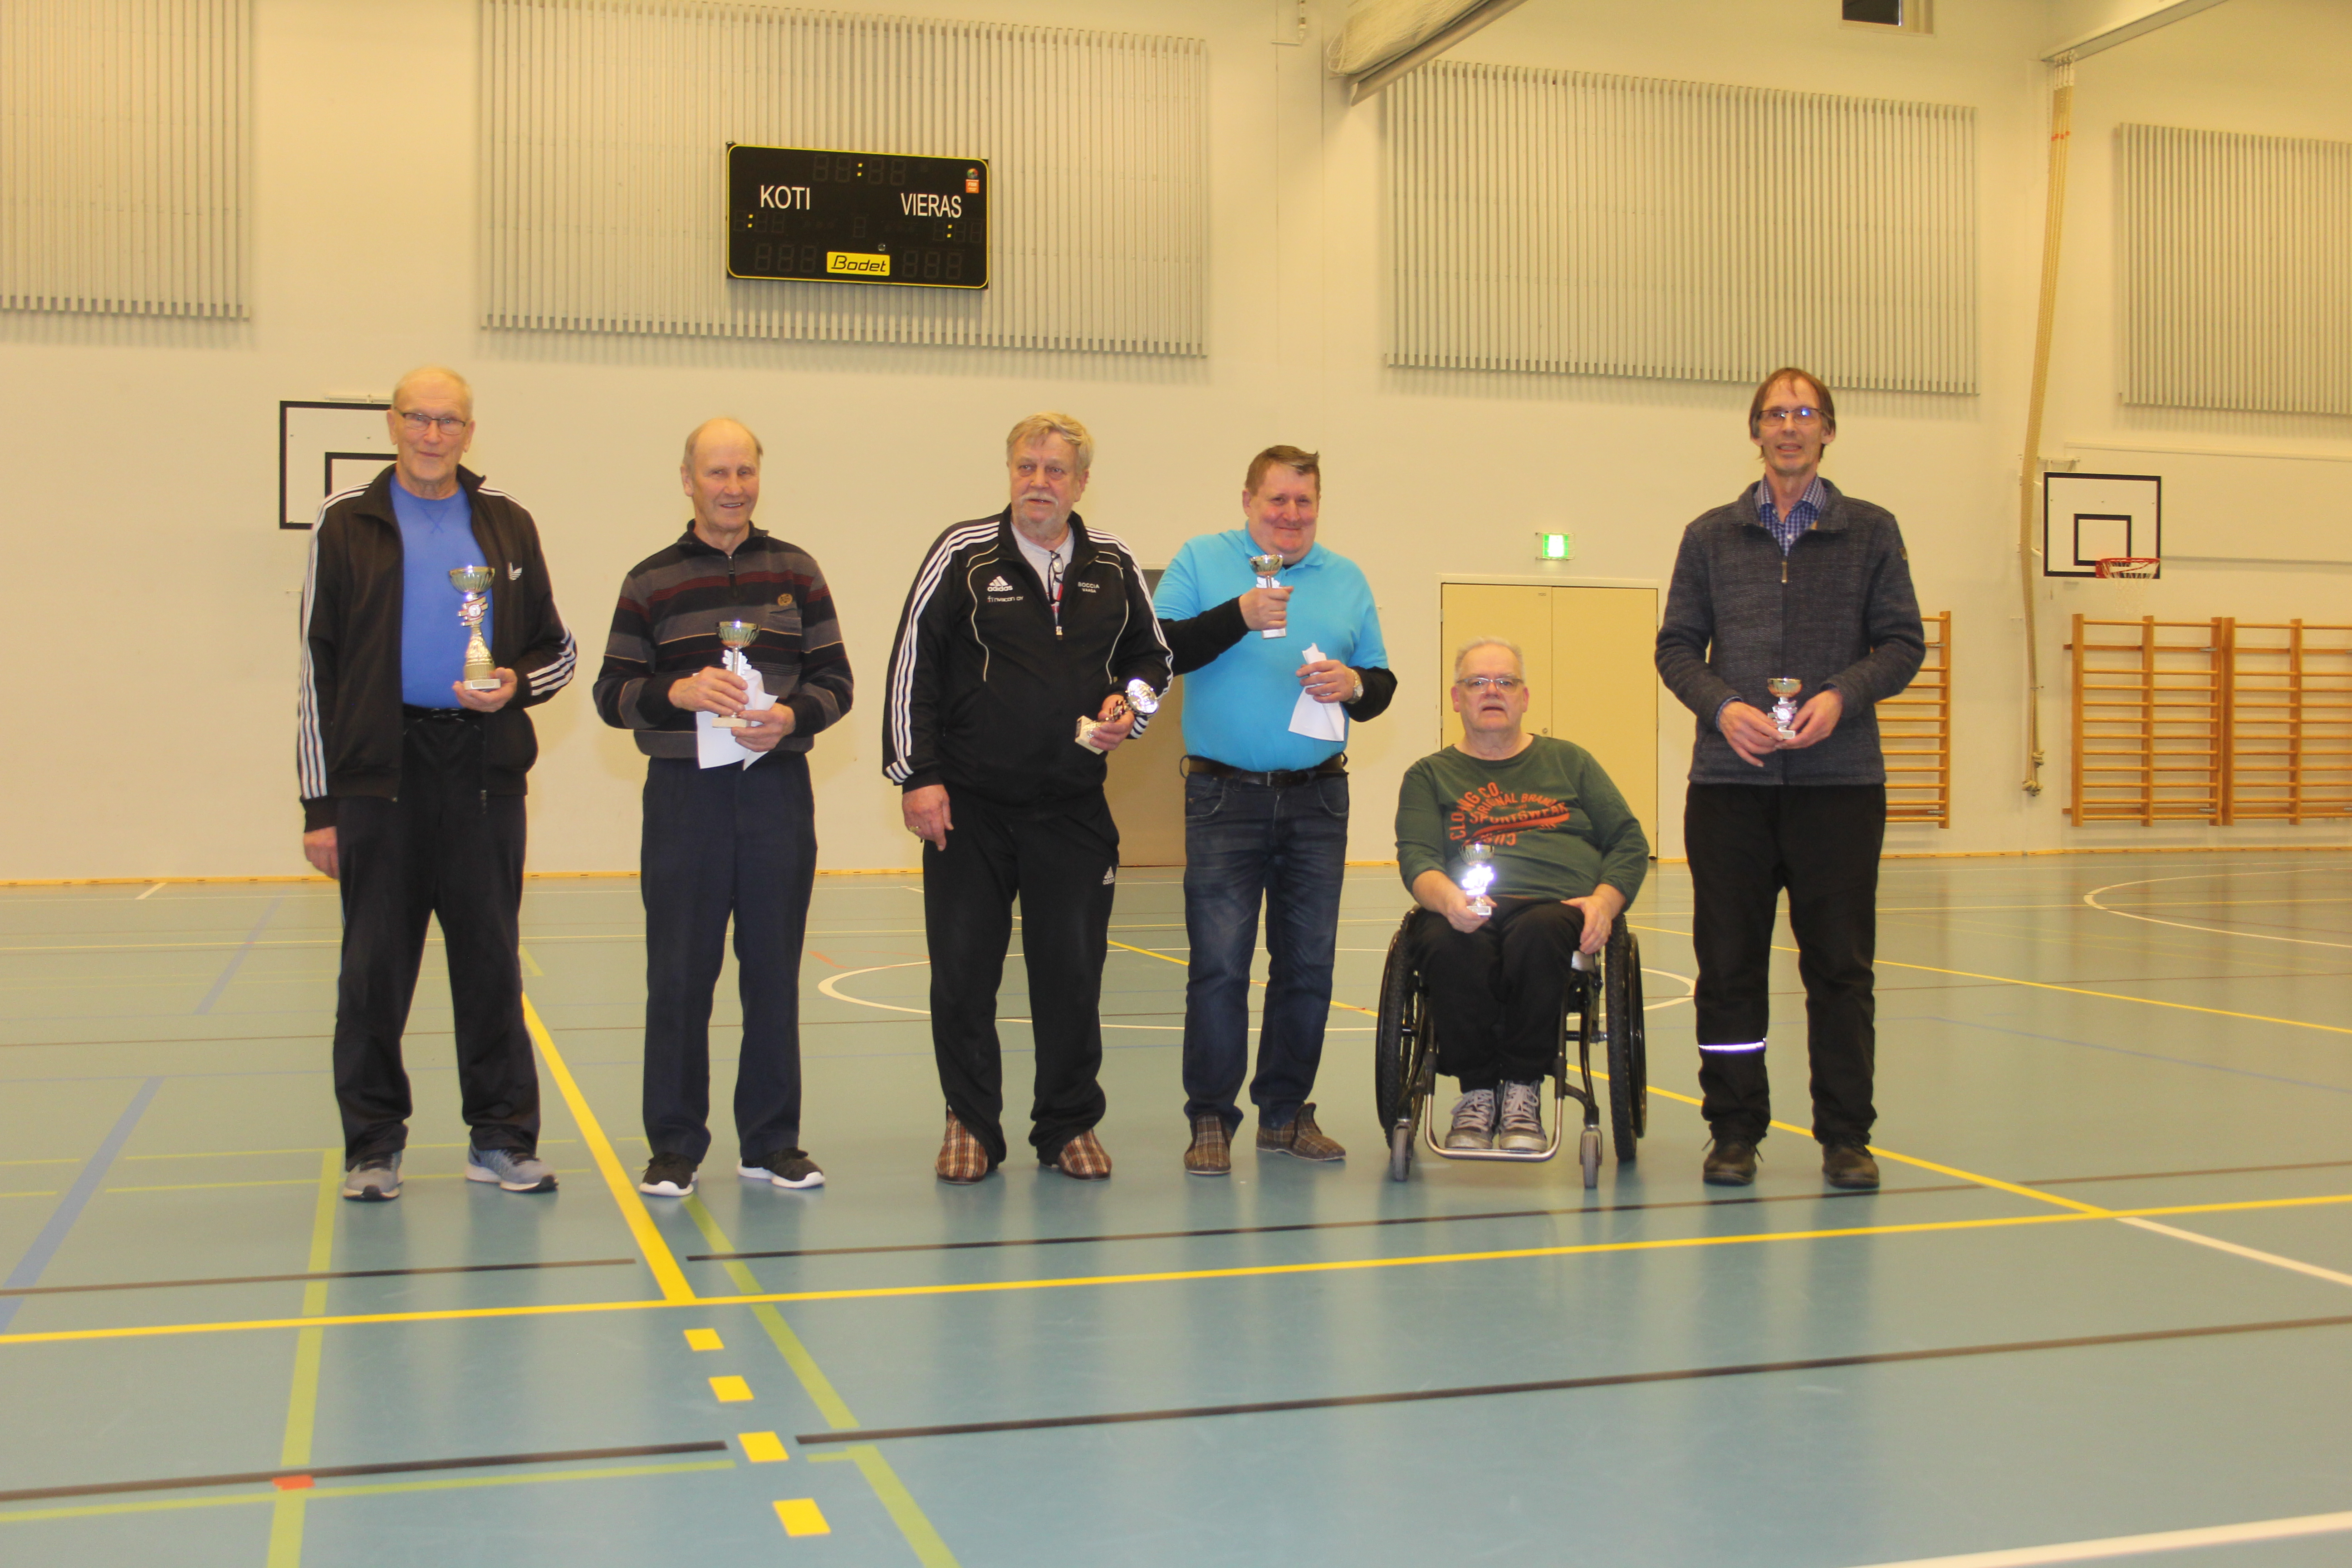 Yleisen sarjan palkitut vasemmalta oikealle: Asko Saksa, Sakari Virtanen, Reijo Järvinen, Jari Joensuu, Raimo Nevanen, Kari Kallio.